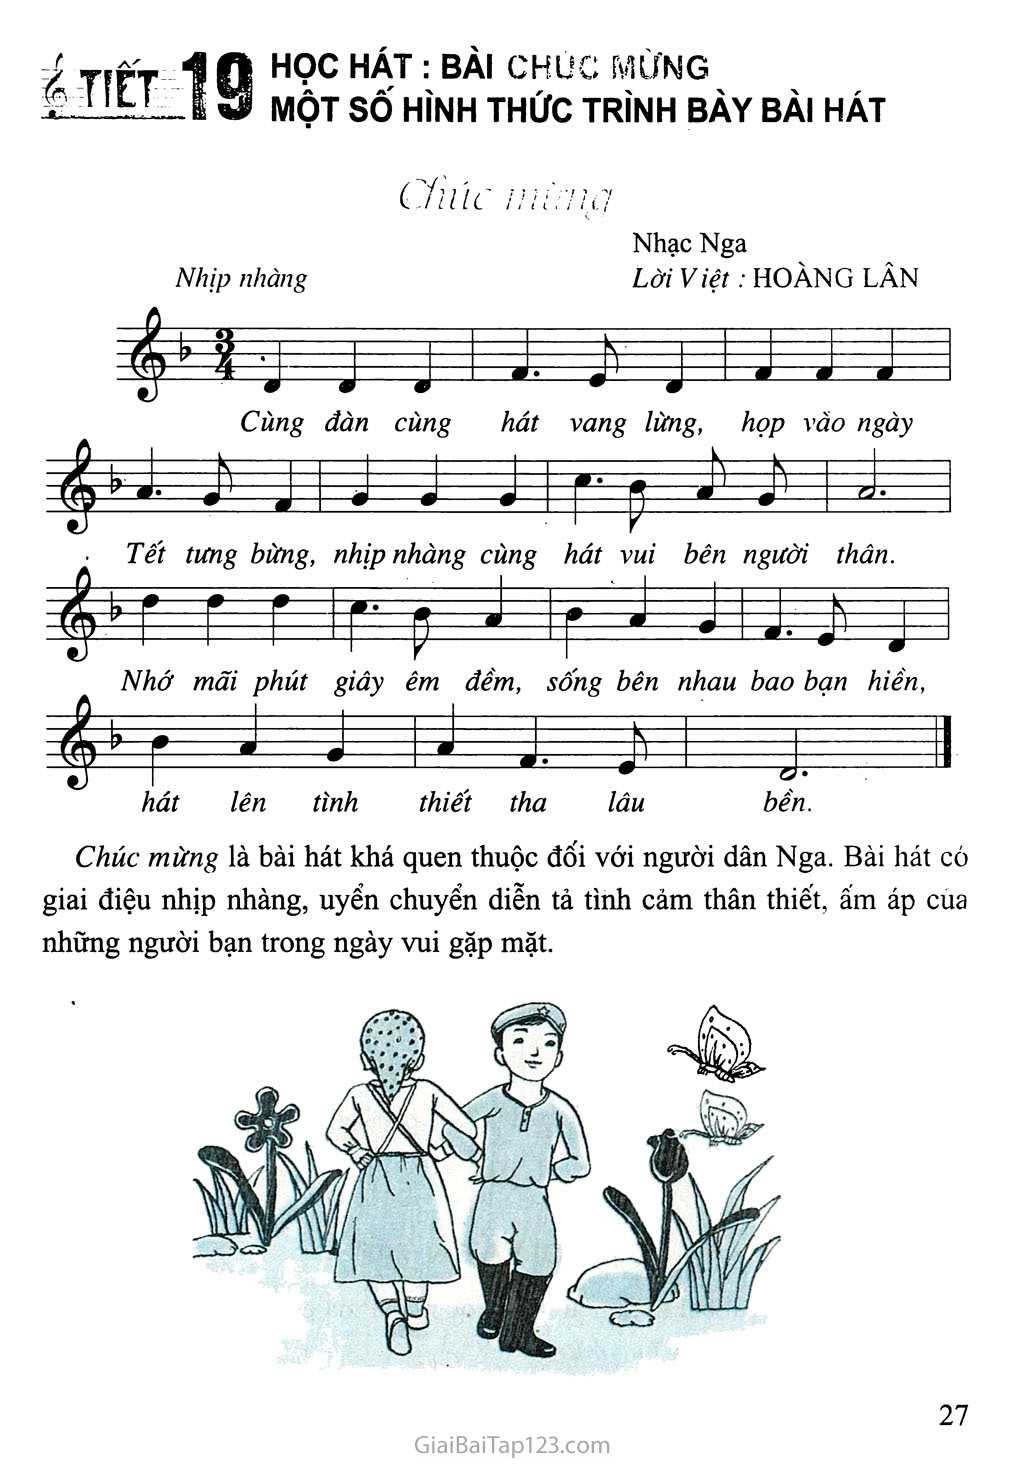 Tiết 19. Học hát: Bài Chúc mừng. Một số hình thức trình bày bài hát trang 1